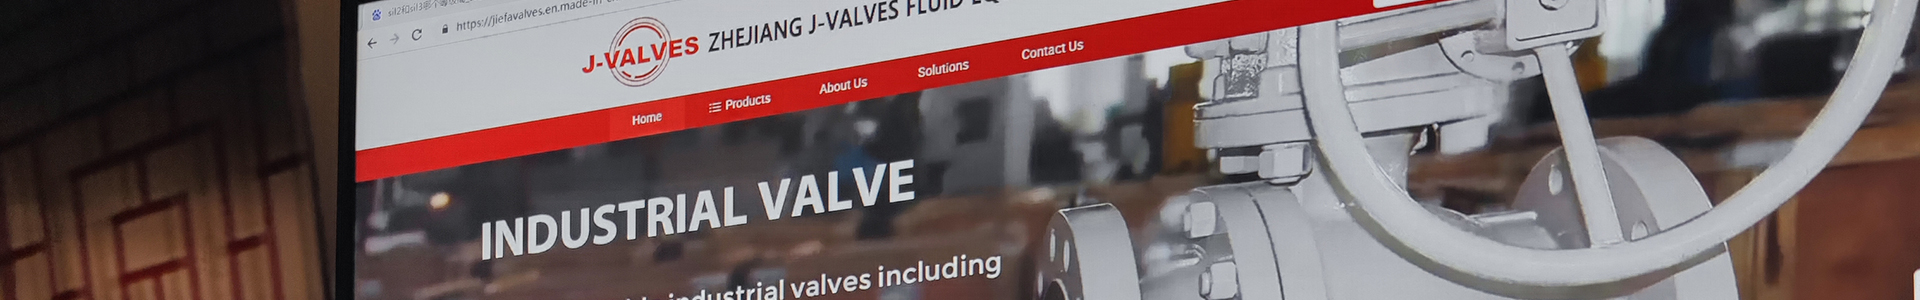 News-J-valves